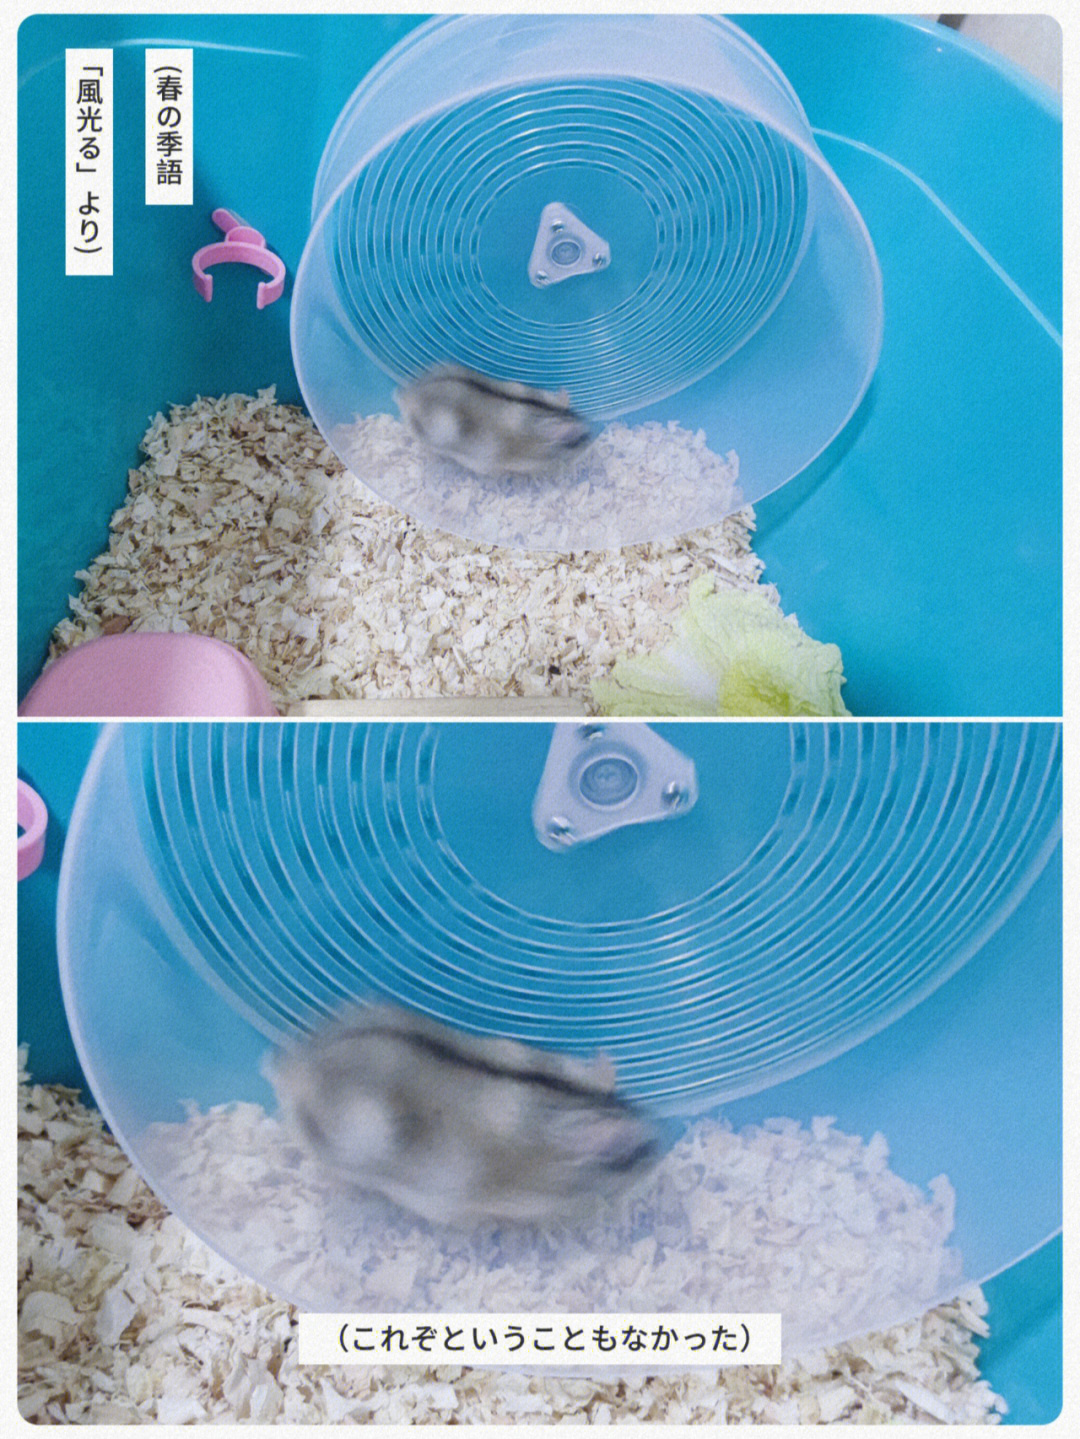 自制仓鼠跑轮教程图片